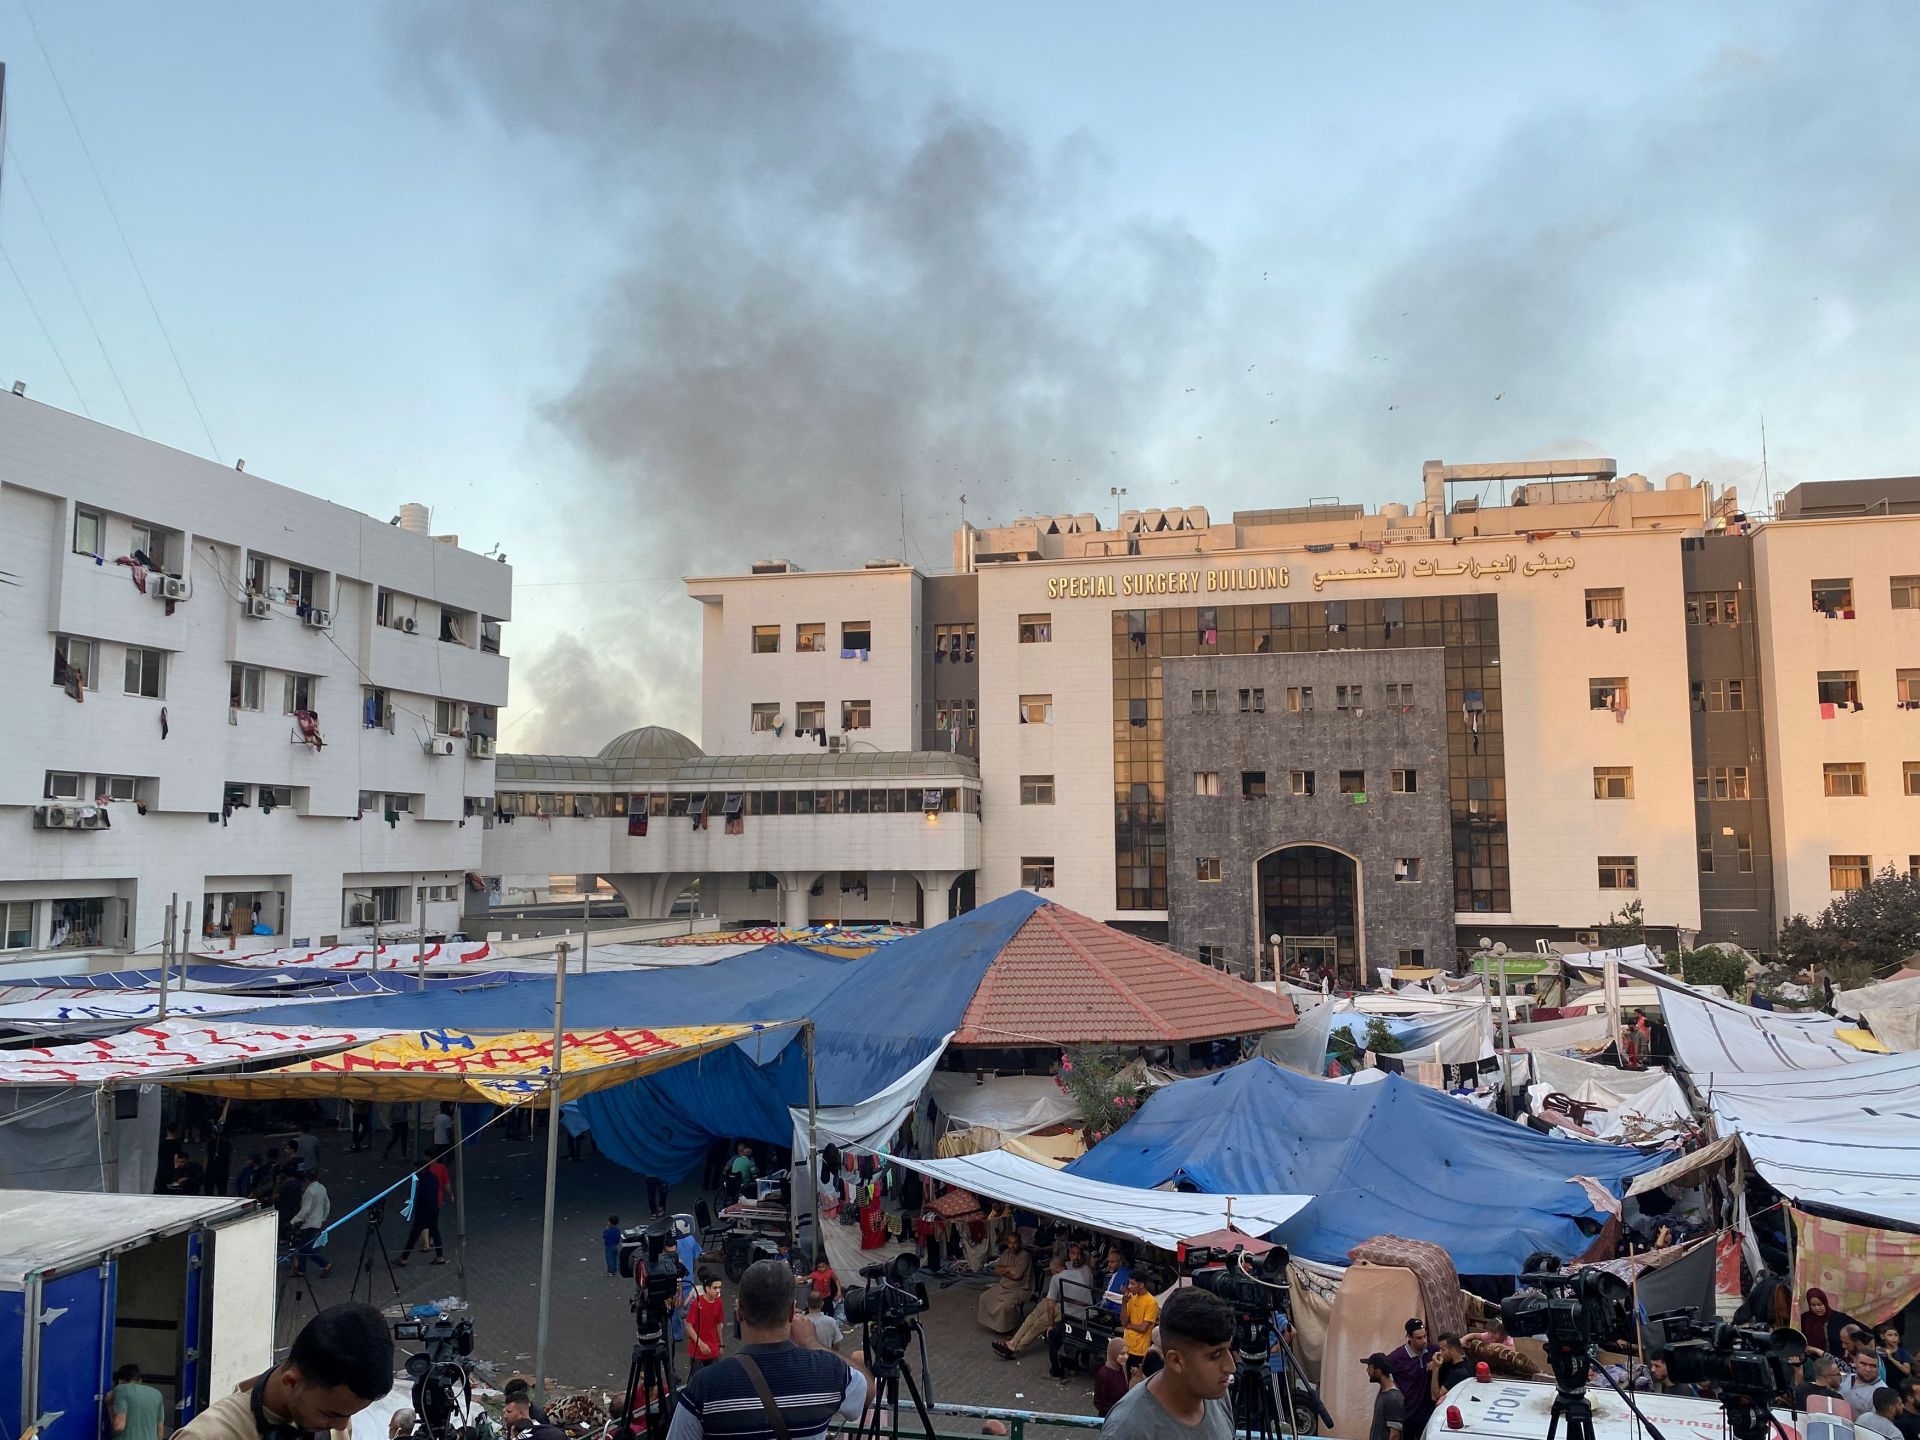 مدير مستشفيات غزة يروي ما جرى باقتحام “الشفاء” وتحذيرات من مجزرة | أخبار – البوكس نيوز